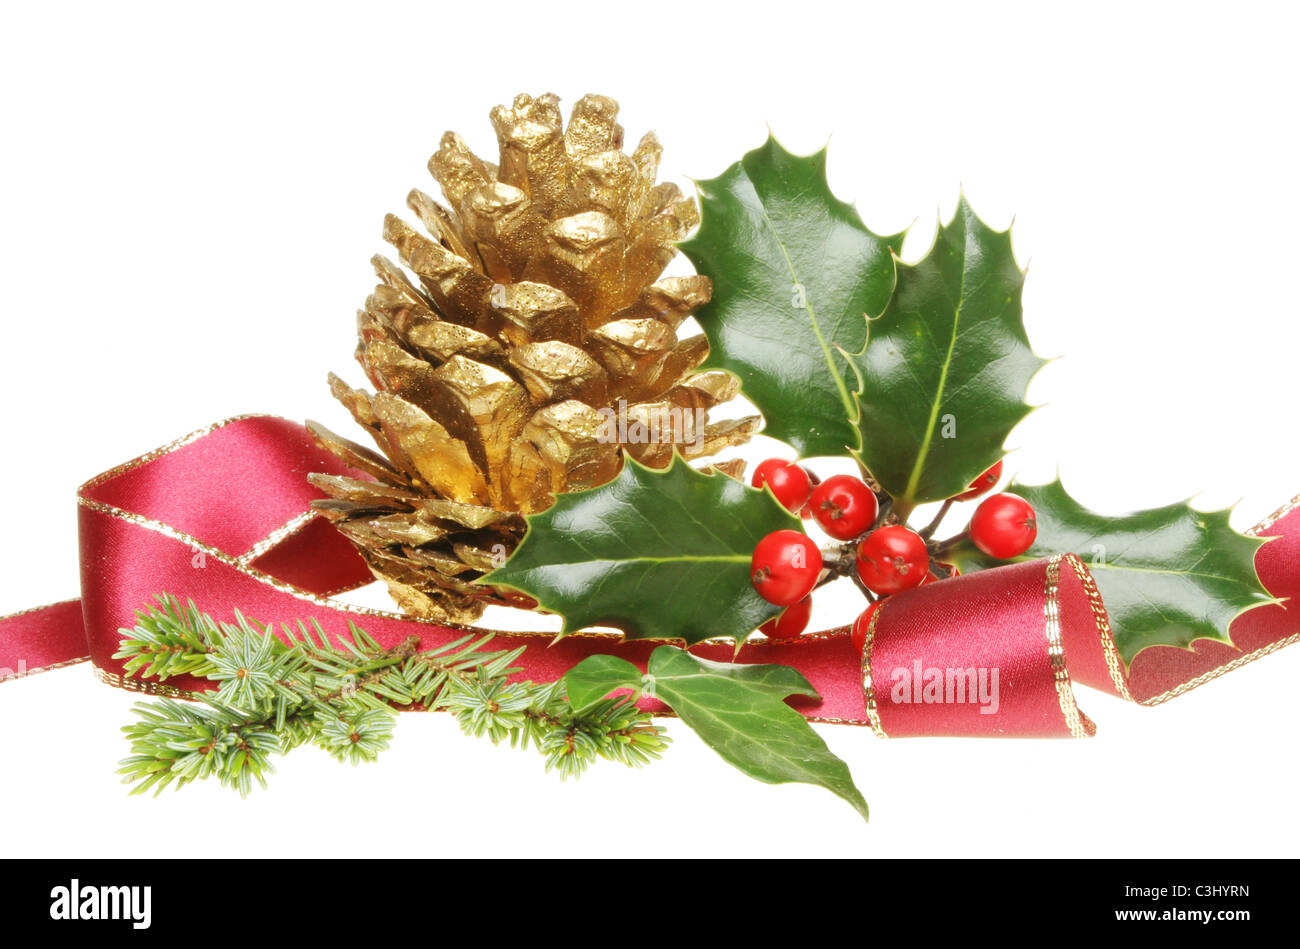 Weihnachtsdekoration von Holly, goldene Tannenzapfen, Tannennadeln und Efeu, umgeben von einem scharfkantigen Goldband Stockfoto